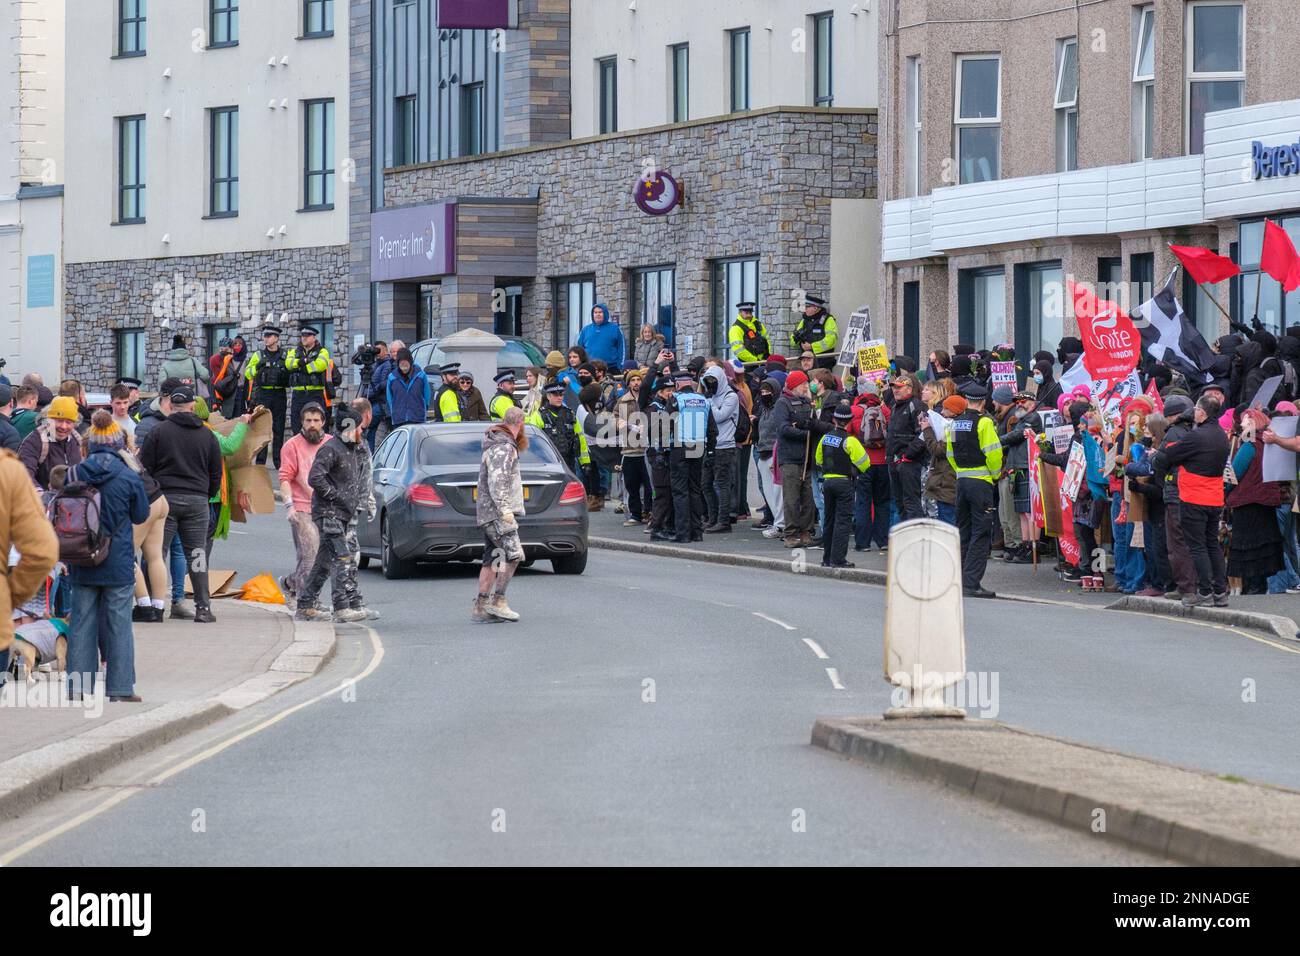 Antifaschisten von Cornwall Resists stehen vor dem Beresford Hotel in Newquay, Cornwall, in dem Flüchtlinge untergebracht sind, während Demonstranten der rechtsextremen Gruppe Patriotic Alternative dagegen protestieren. Foto: Samstag, 25. Februar 2023. Stockfoto